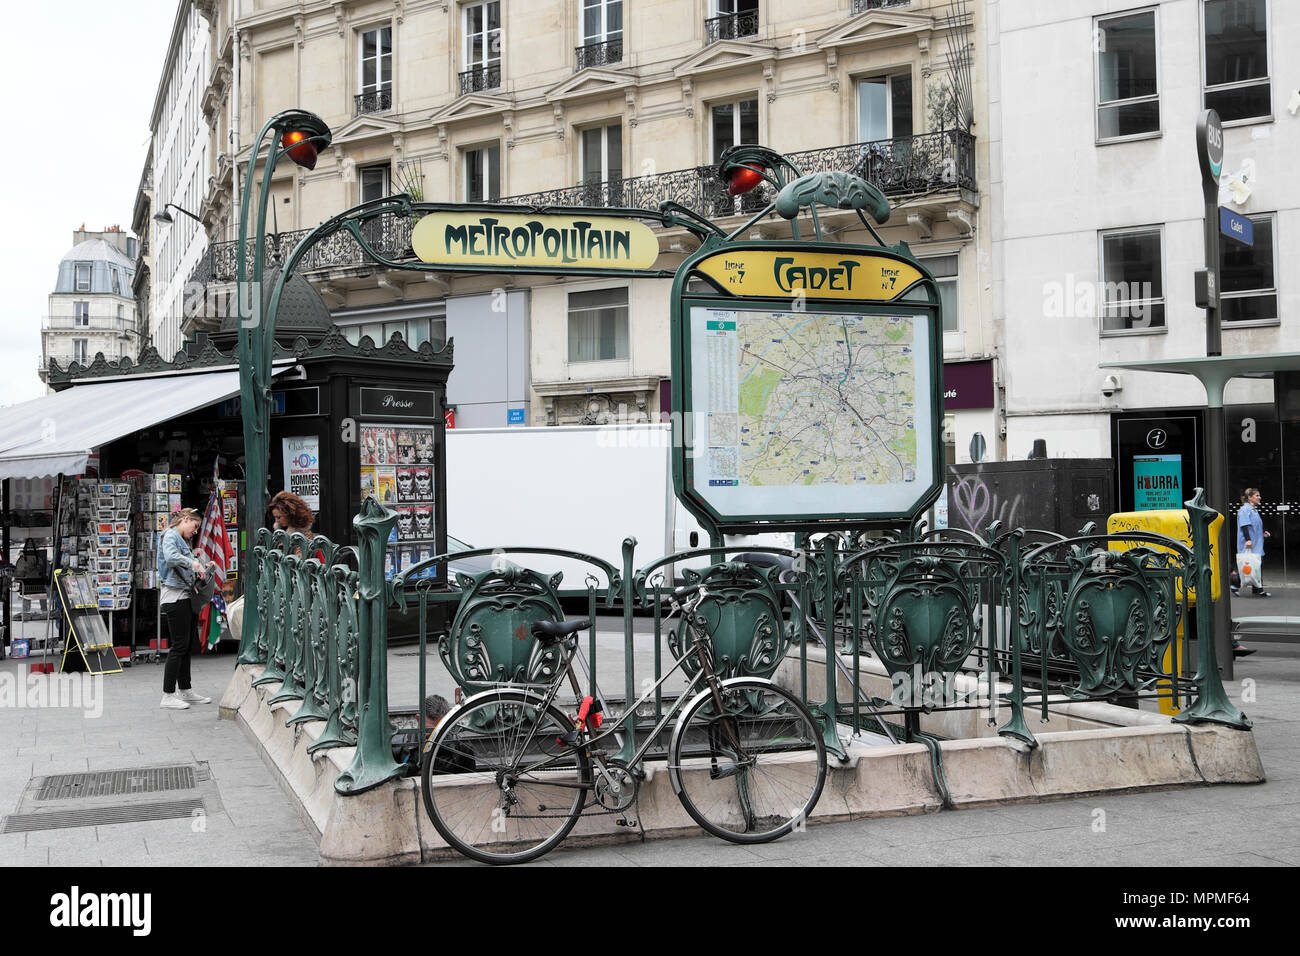 Pariser Metro Eingang außerhalb Cadet Station mit Metropolit Zeichen, Kadett unterzeichnen und Karte in Paris Frankreich Europa EU-KATHY DEWITT Stockfoto